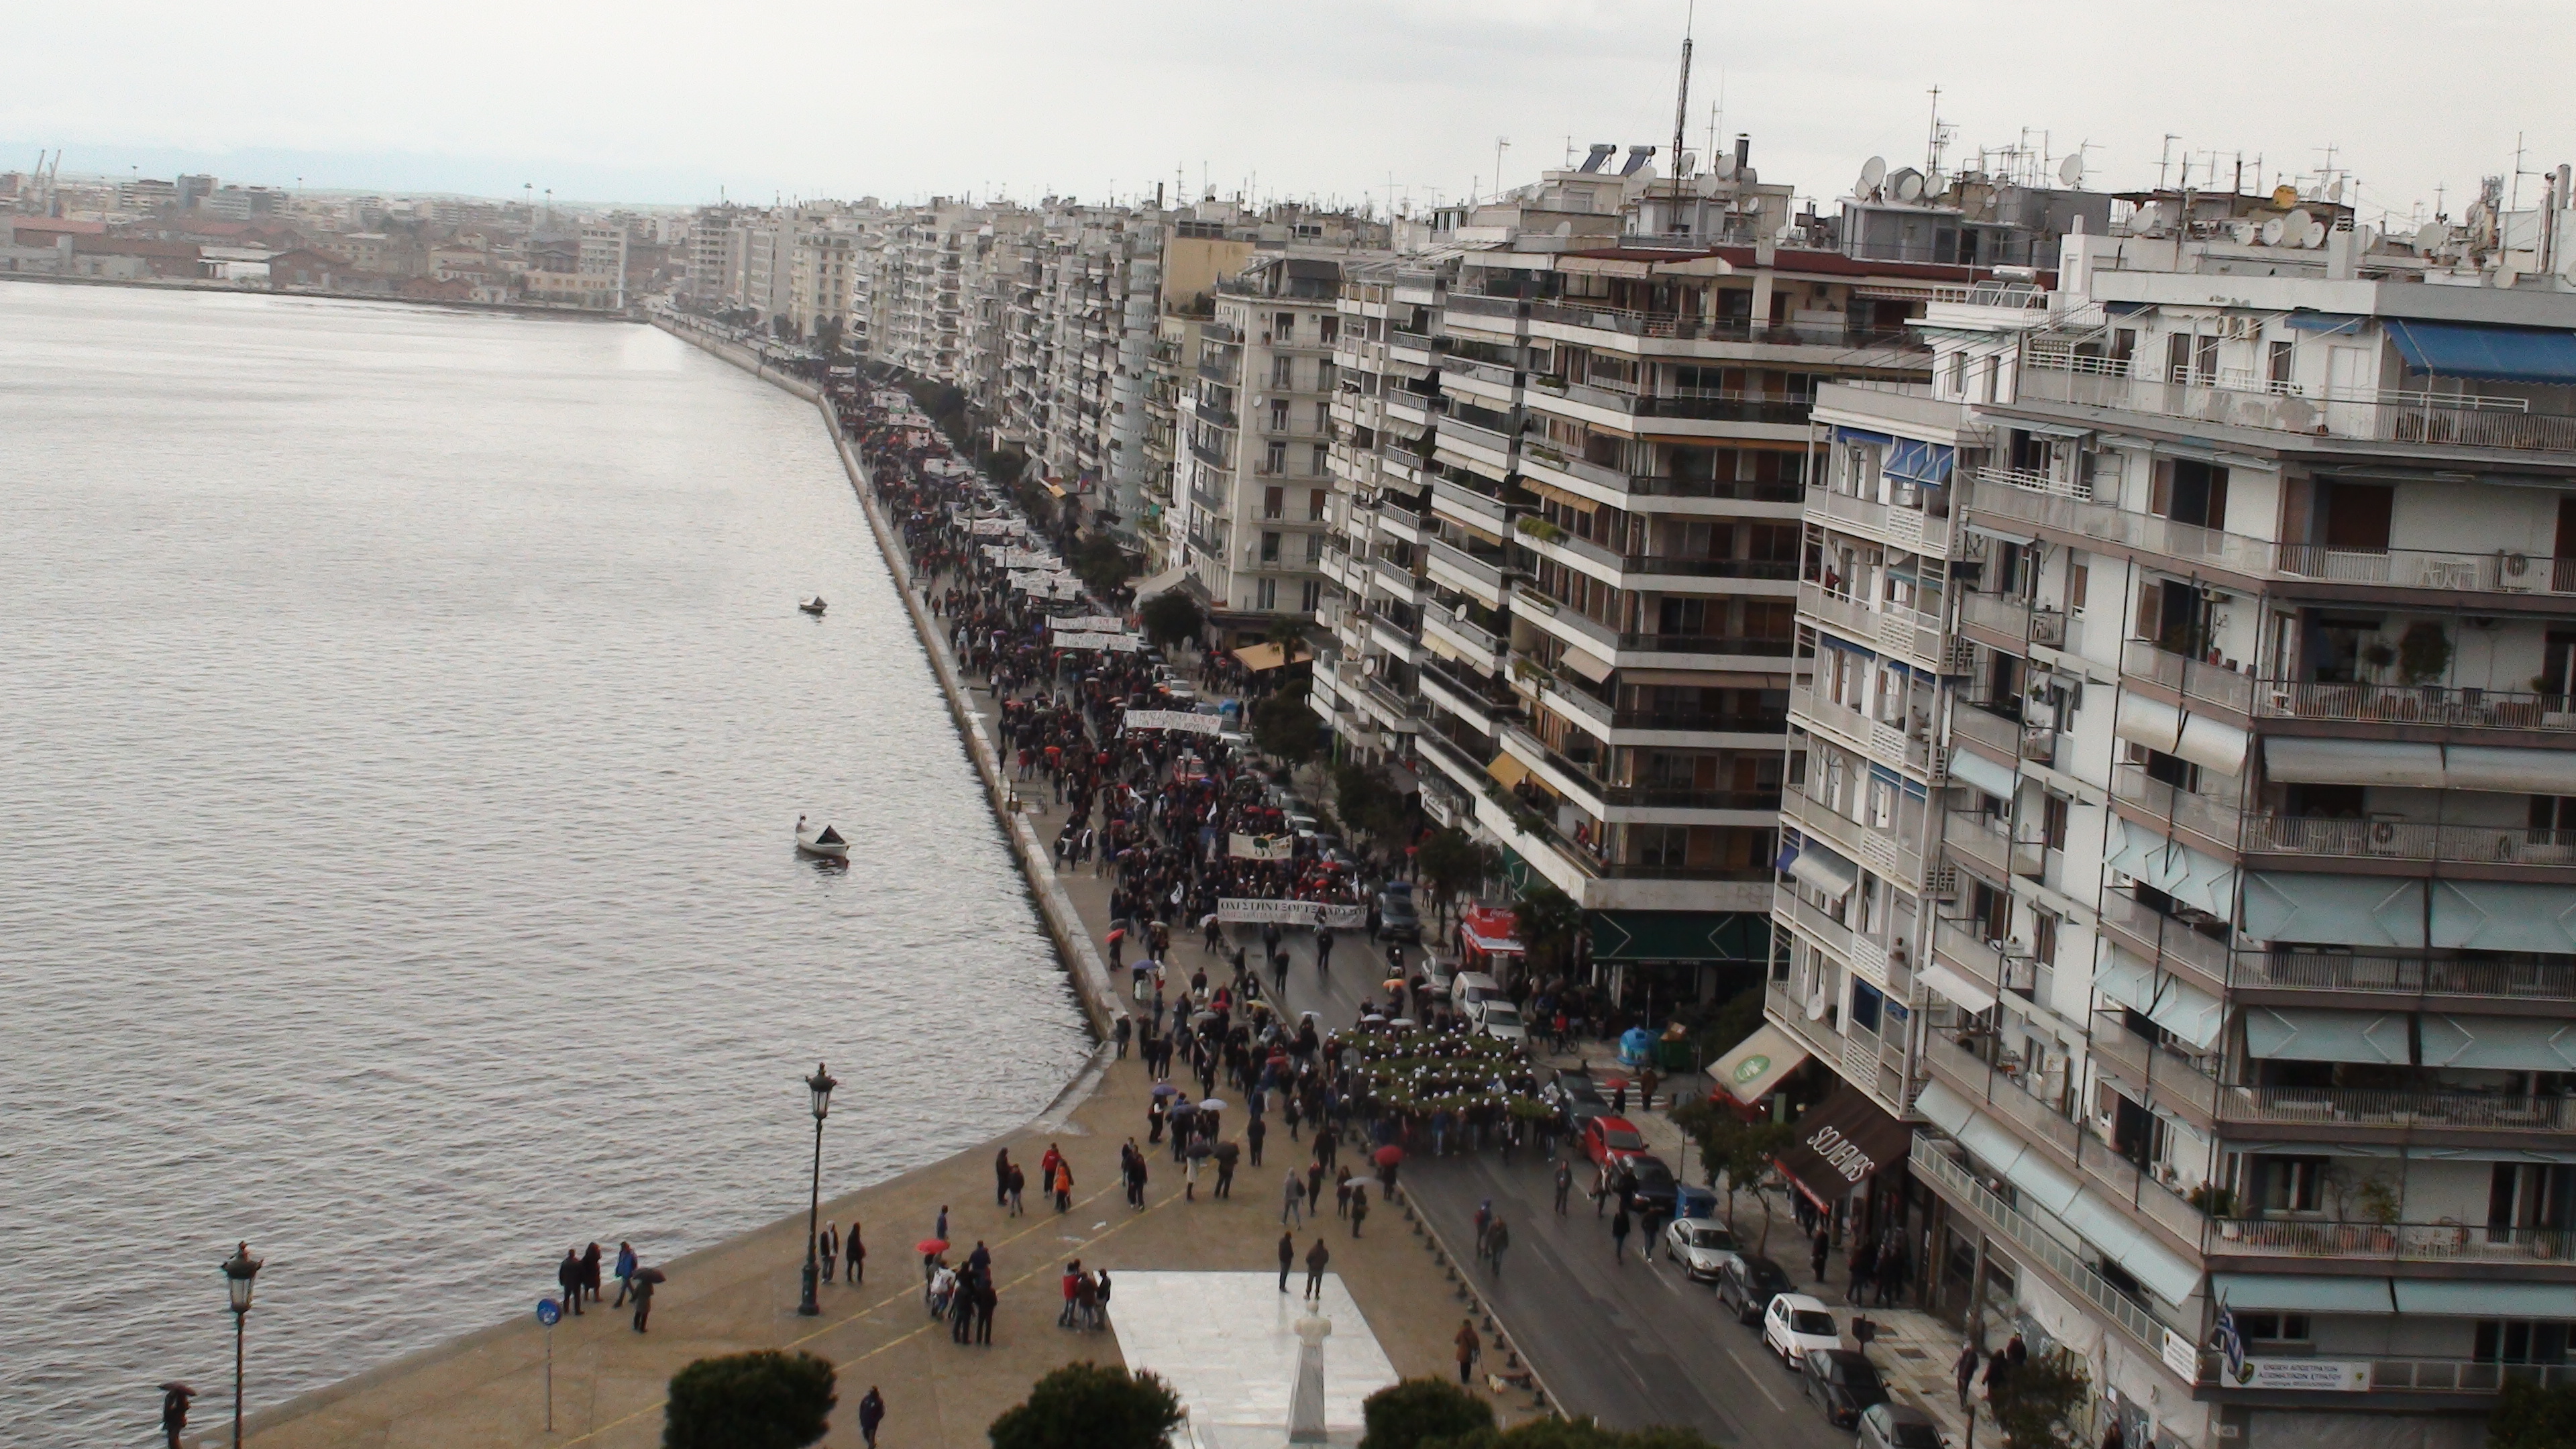 Θεσσαλονίκη: Μεγάλη πορεία ενάντια στην εξόρυξη χρυσού (φωτό και βίντεο)